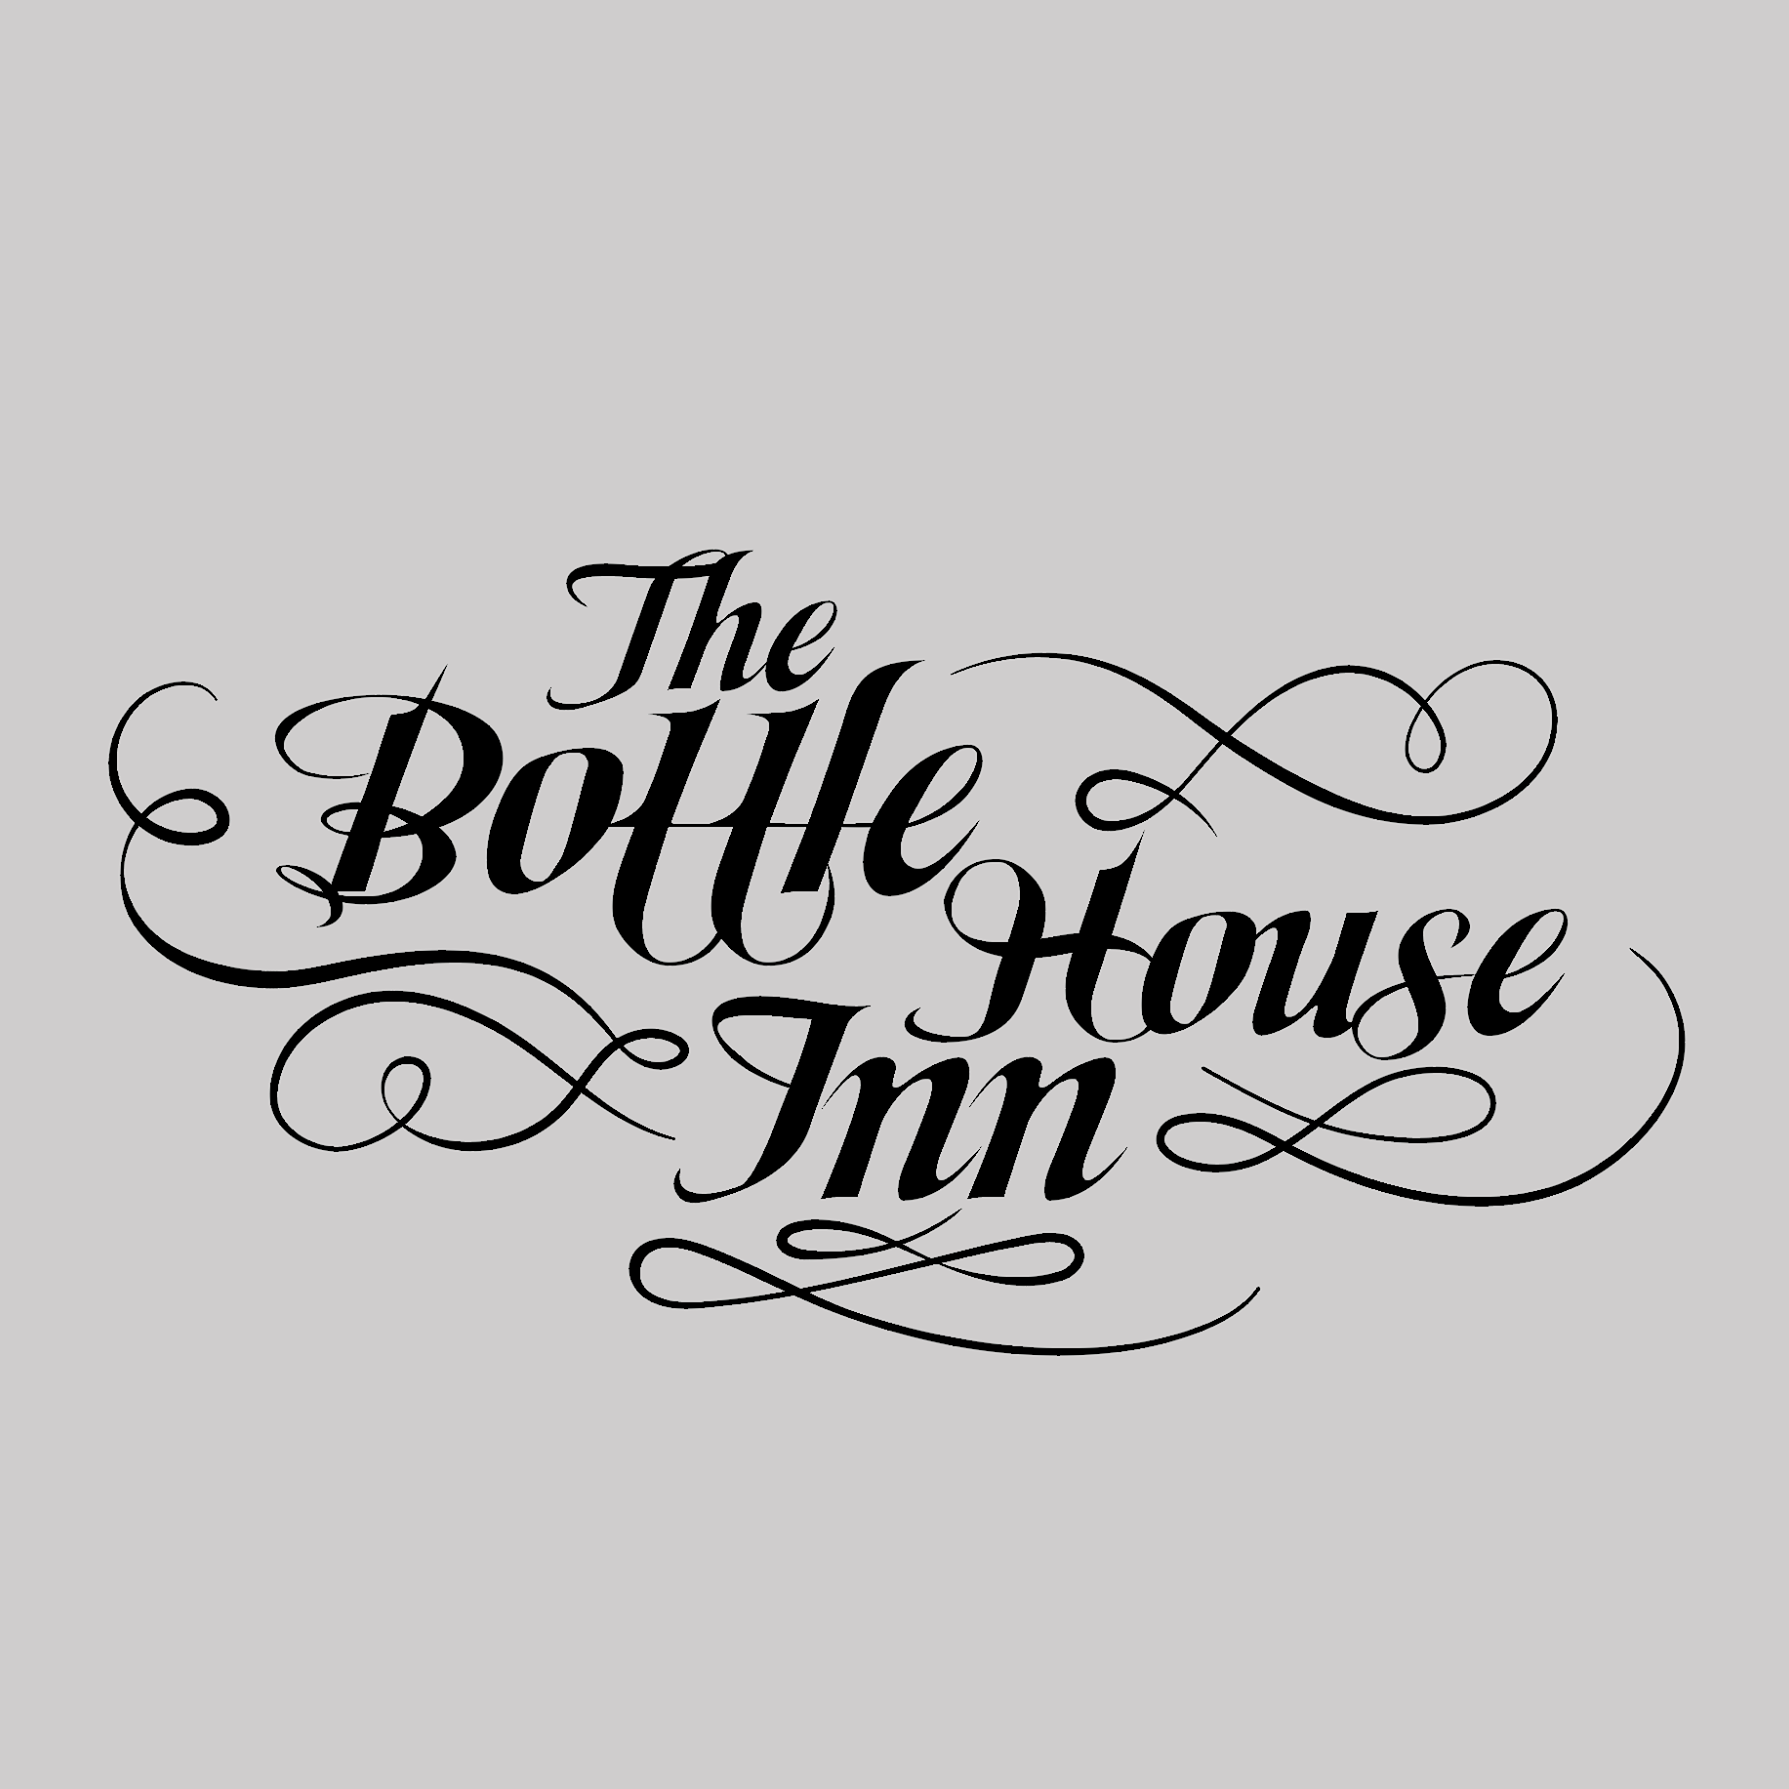 Bottle House Inn logo